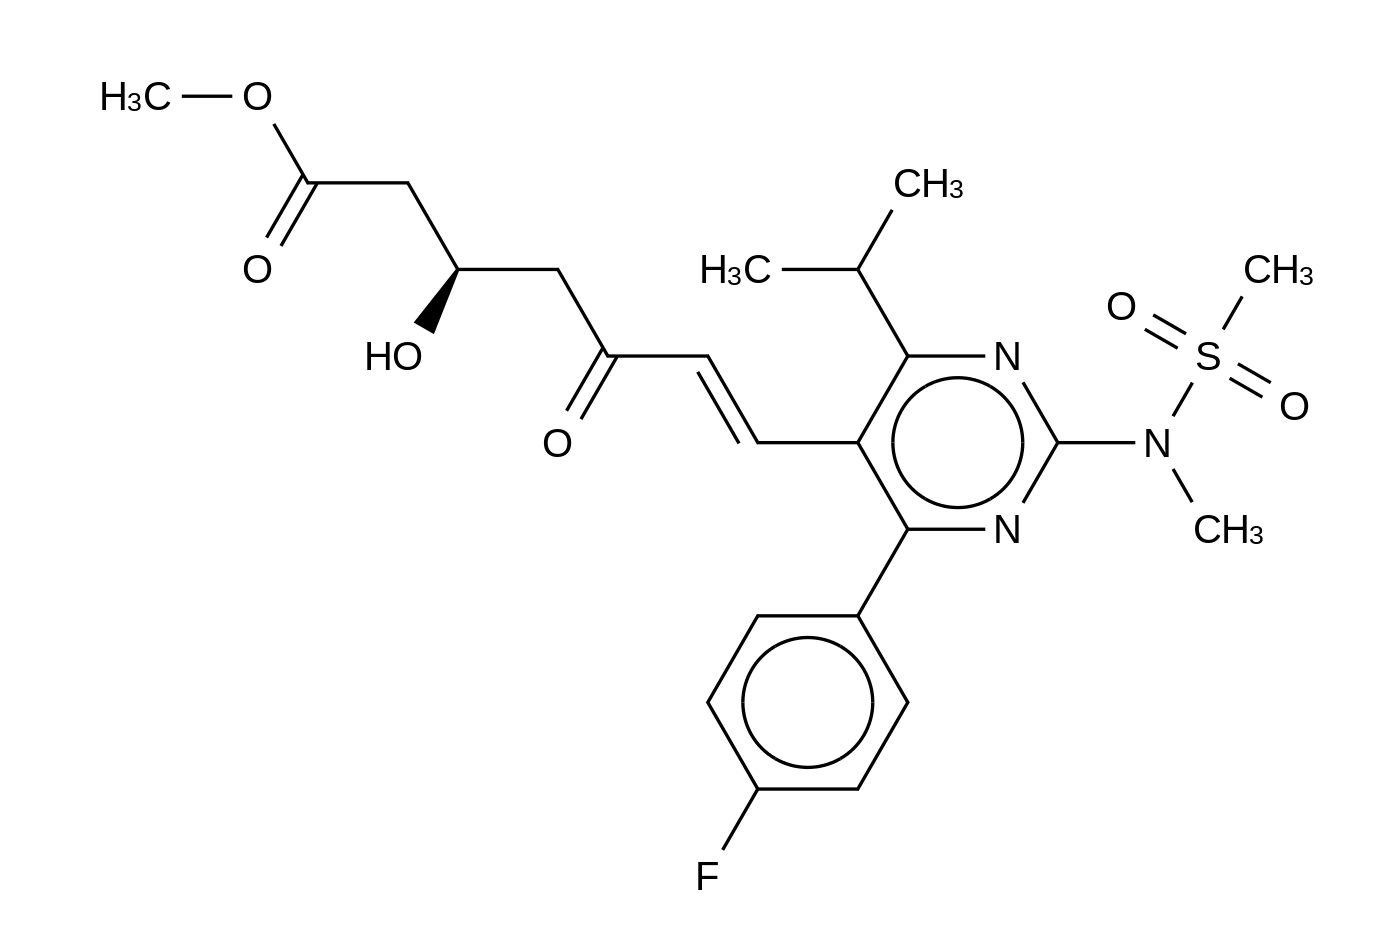 5-Oxorosuvastatin Methyl Ester